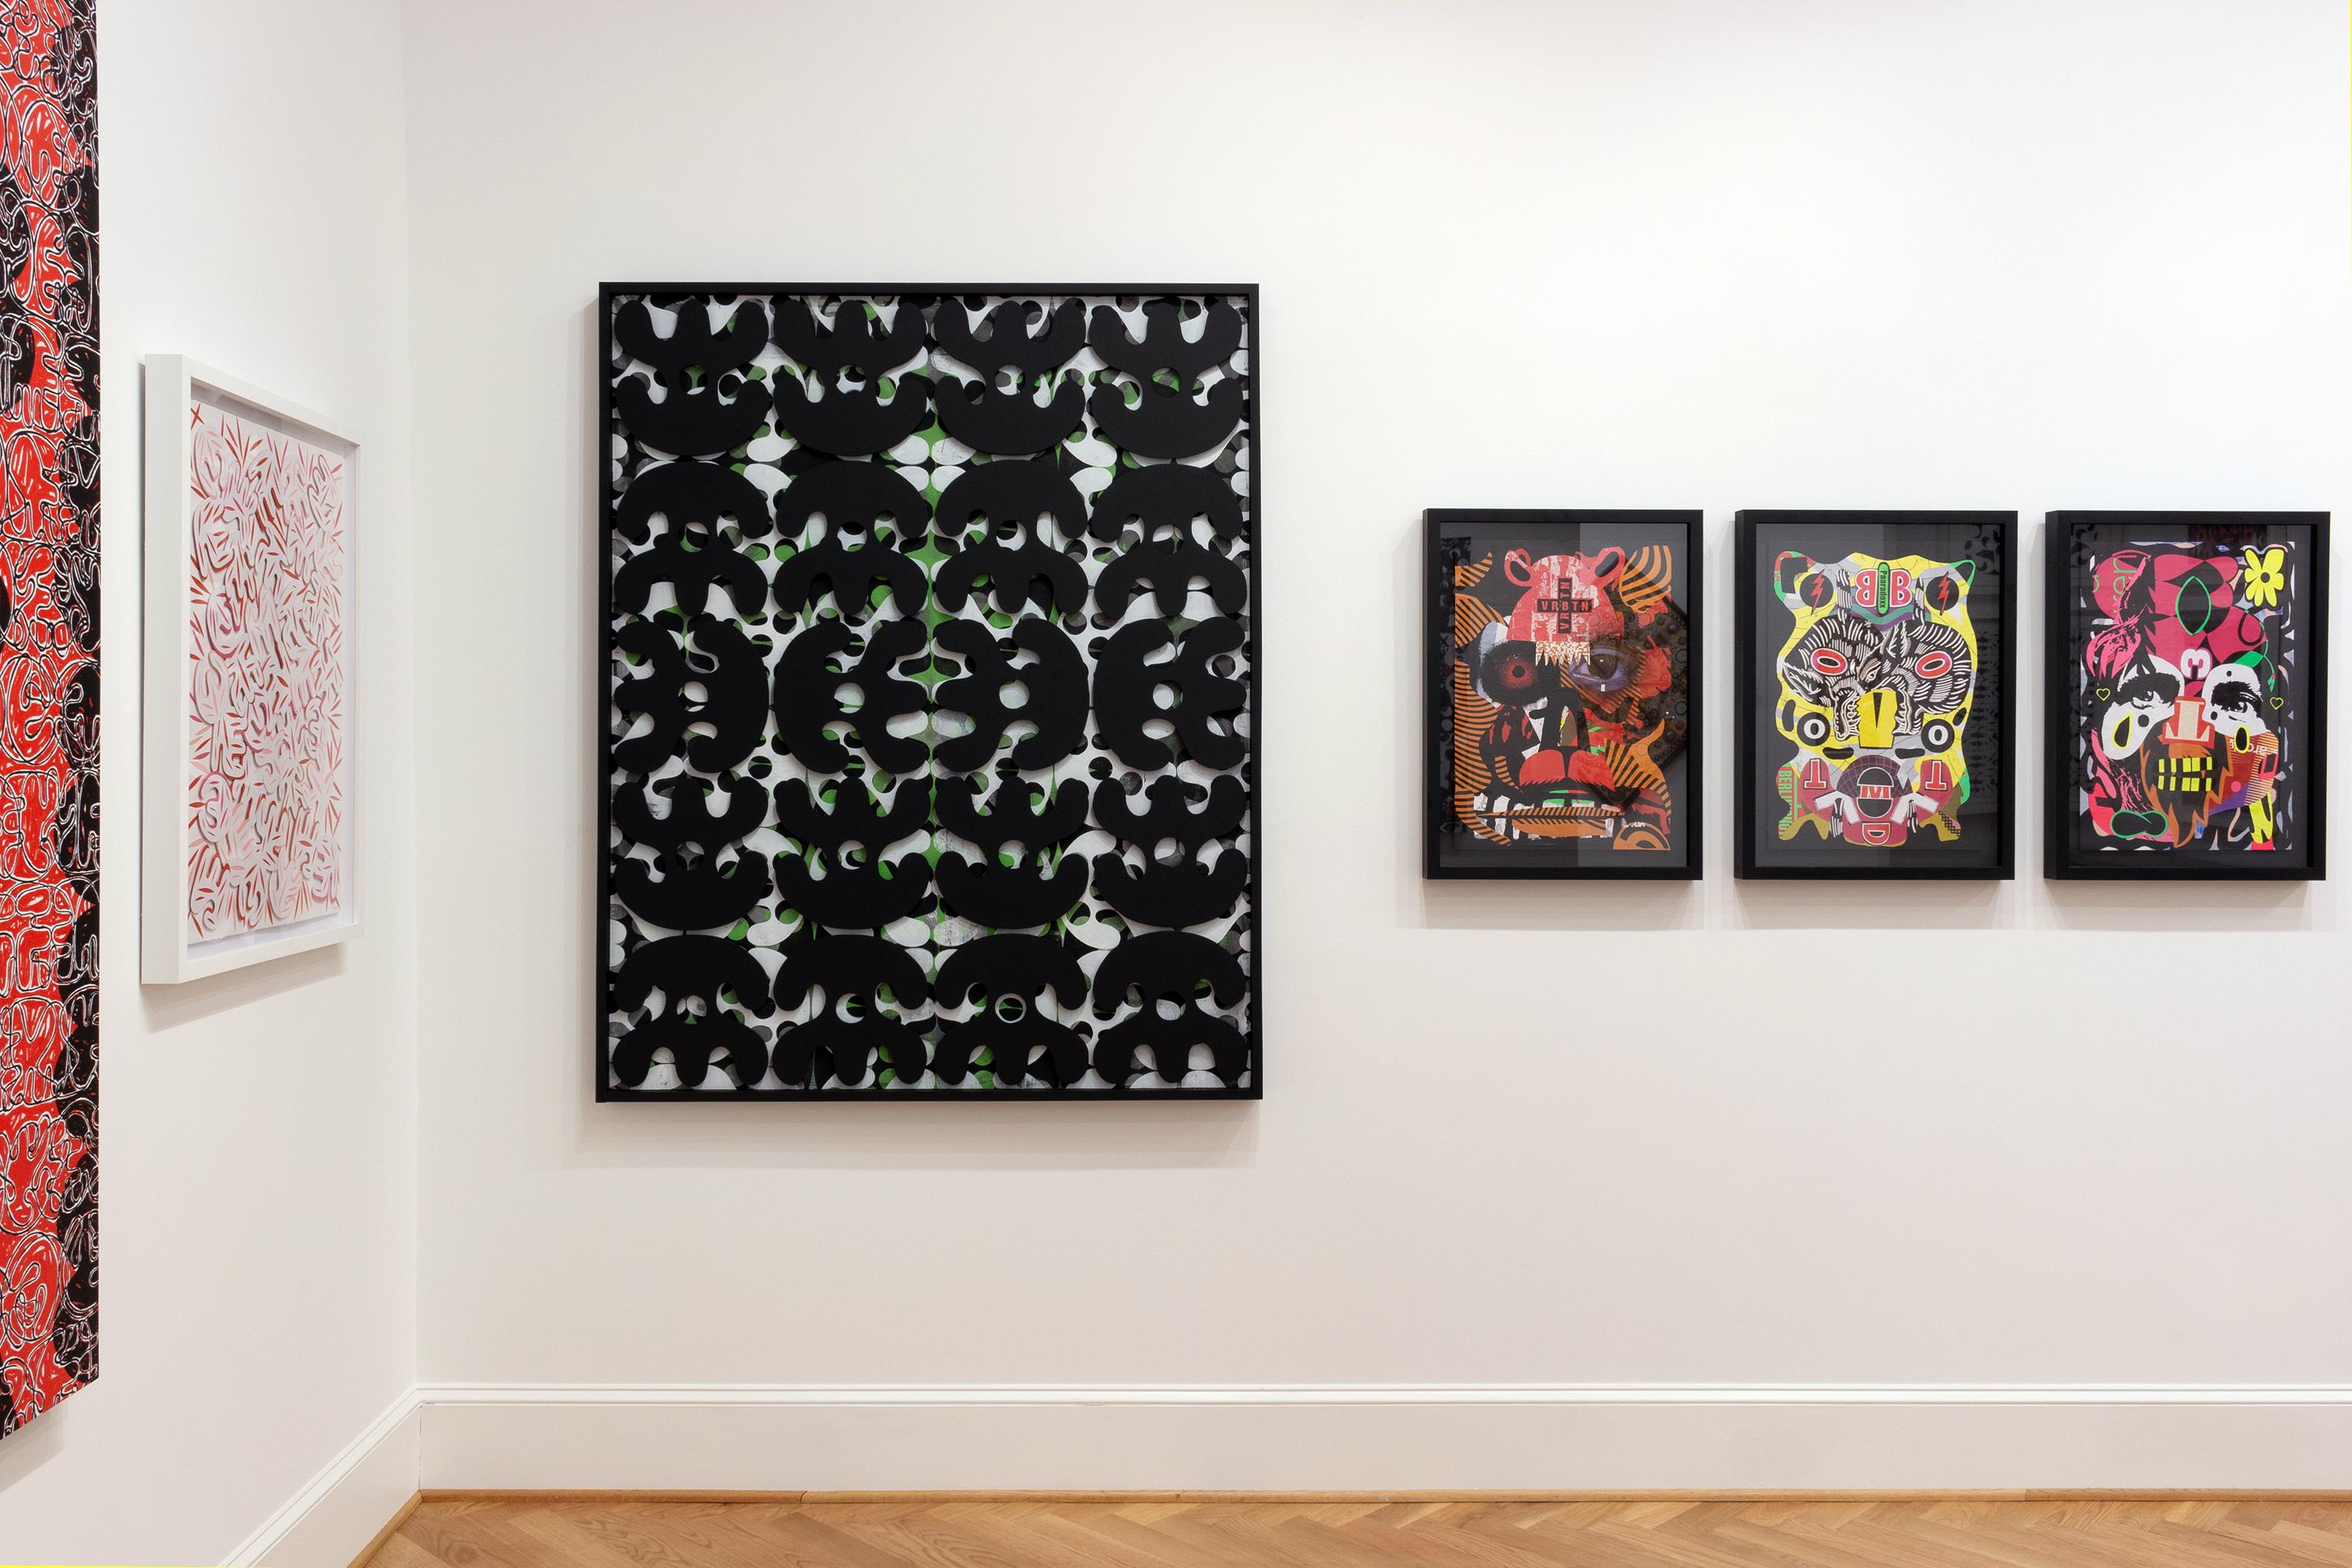 Dieses abstrakte Collage-Porträt ist in den Farben Gelb, Grün, Rot und Schwarz gehalten.

Dieses Werk ist ungerahmt 23,25 x 16,5 cm groß und gerahmt 28 x 21 cm in einem dünnen schwarzen Rahmen.

Der in Kolumbien geborene und in Atlanta lebende